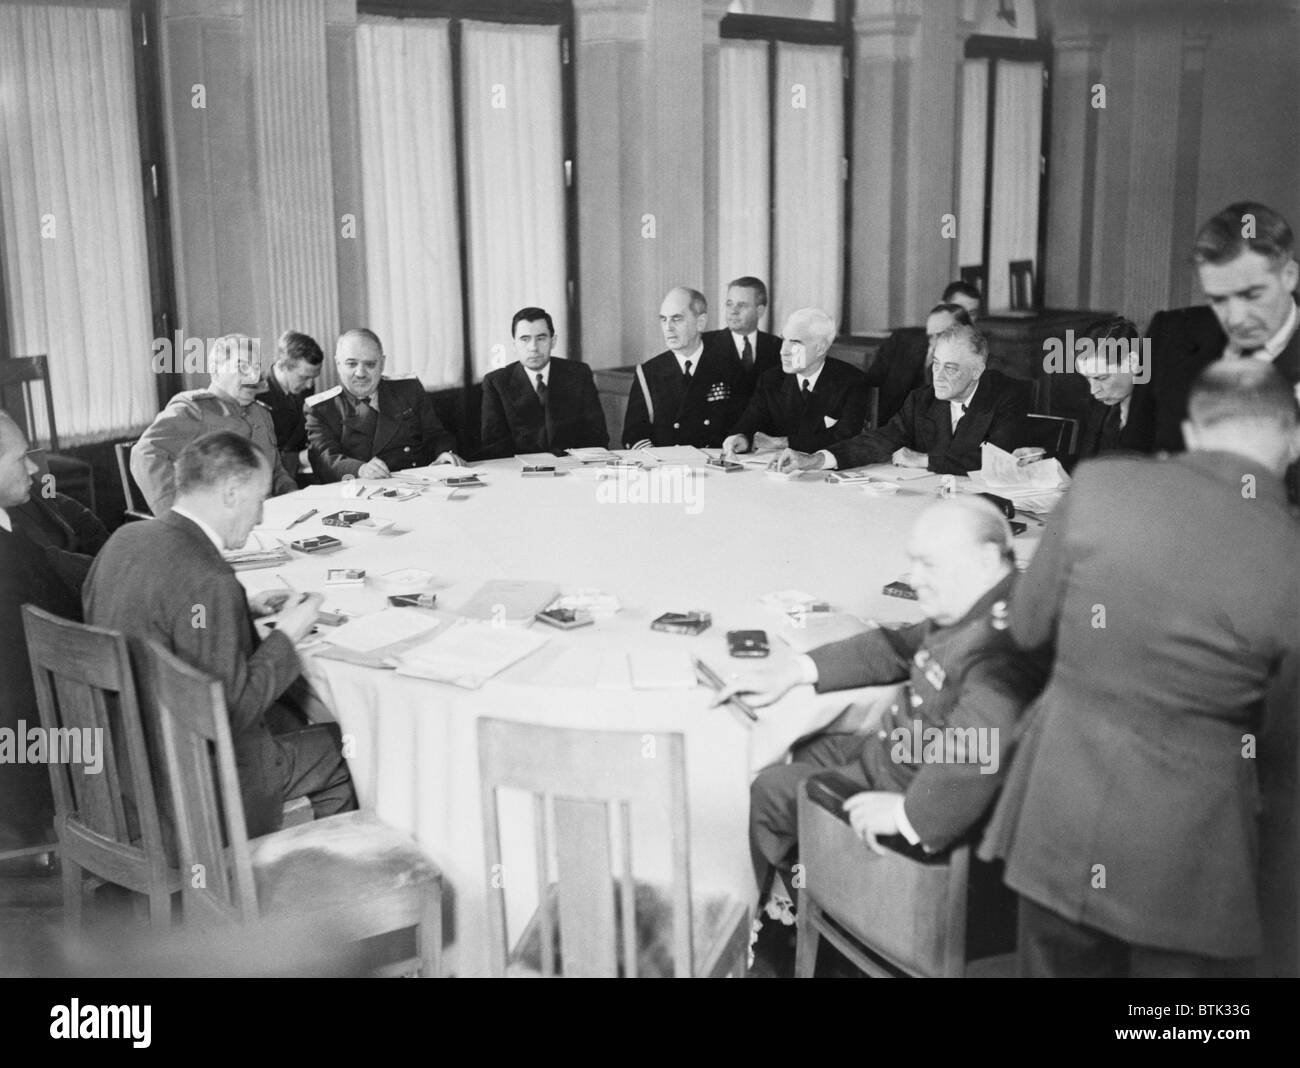 Präsident Franklin D. Roosevelt, Premierminister Winston Churchill und Marschall Joseph Stalin sind mit anderen rund um den Konferenztisch in Jalta, Krim, in der Sowjetunion gezeigt. Stockfoto